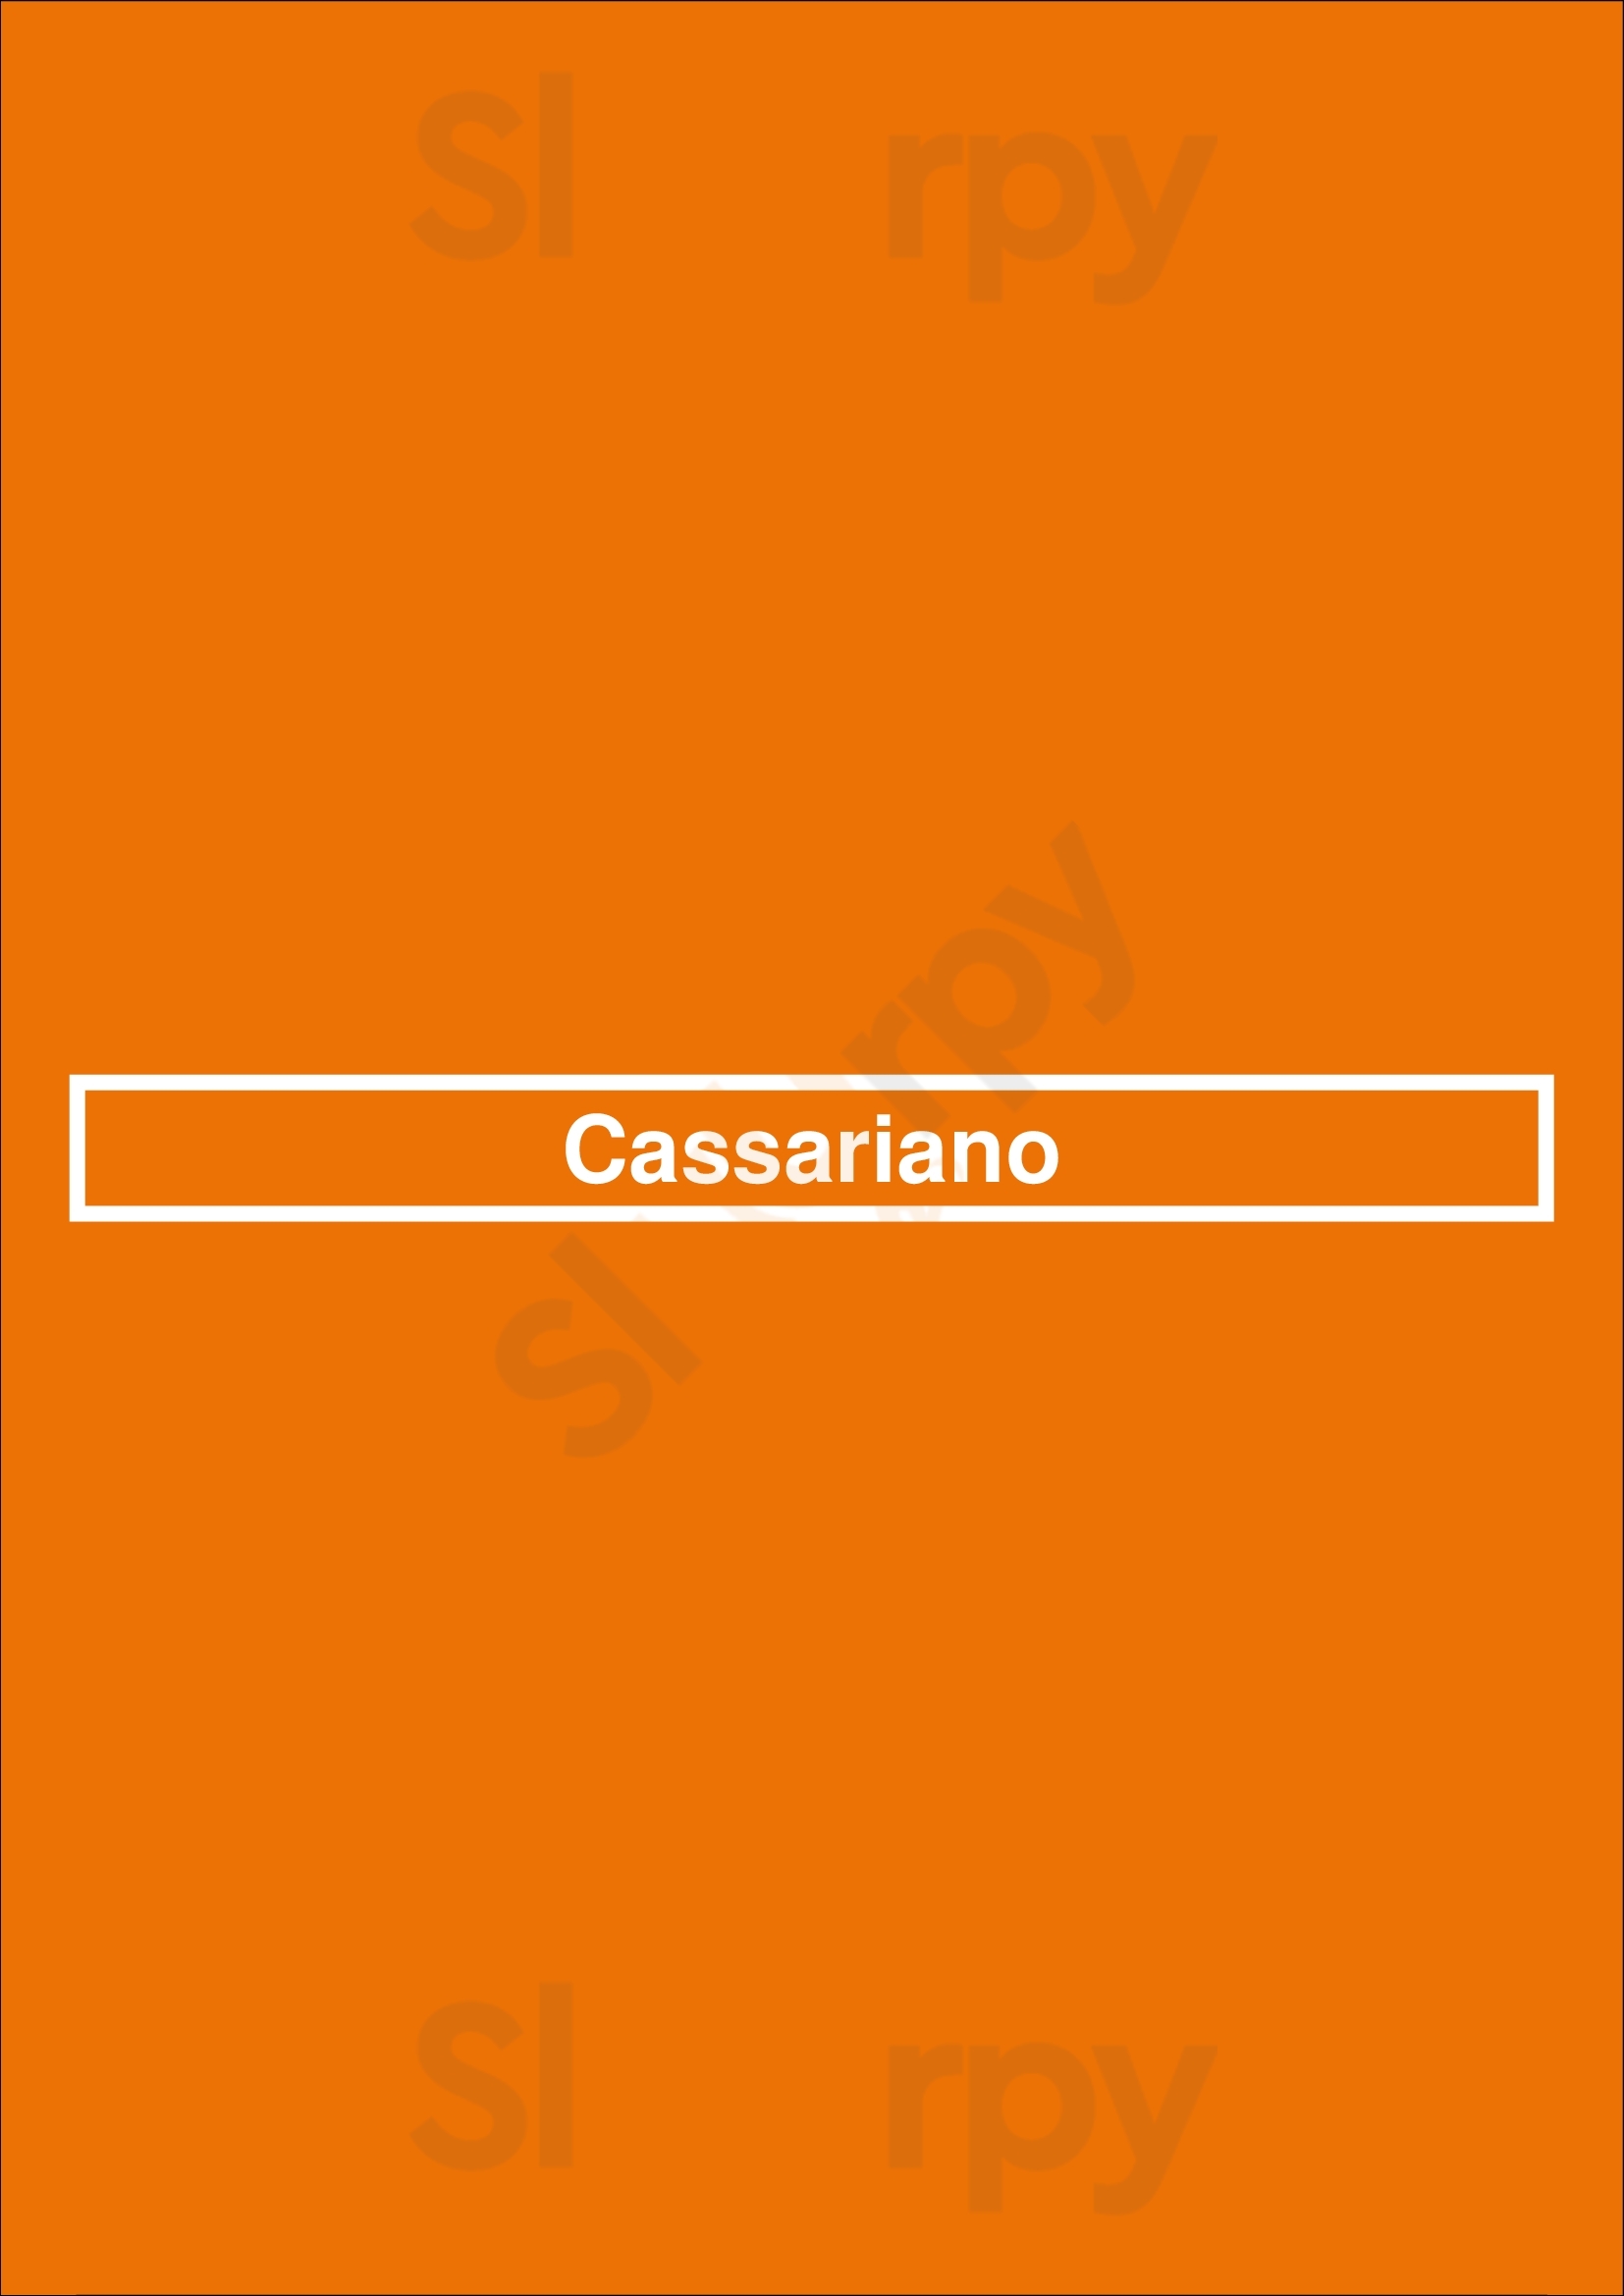 Cassariano Mineola Menu - 1